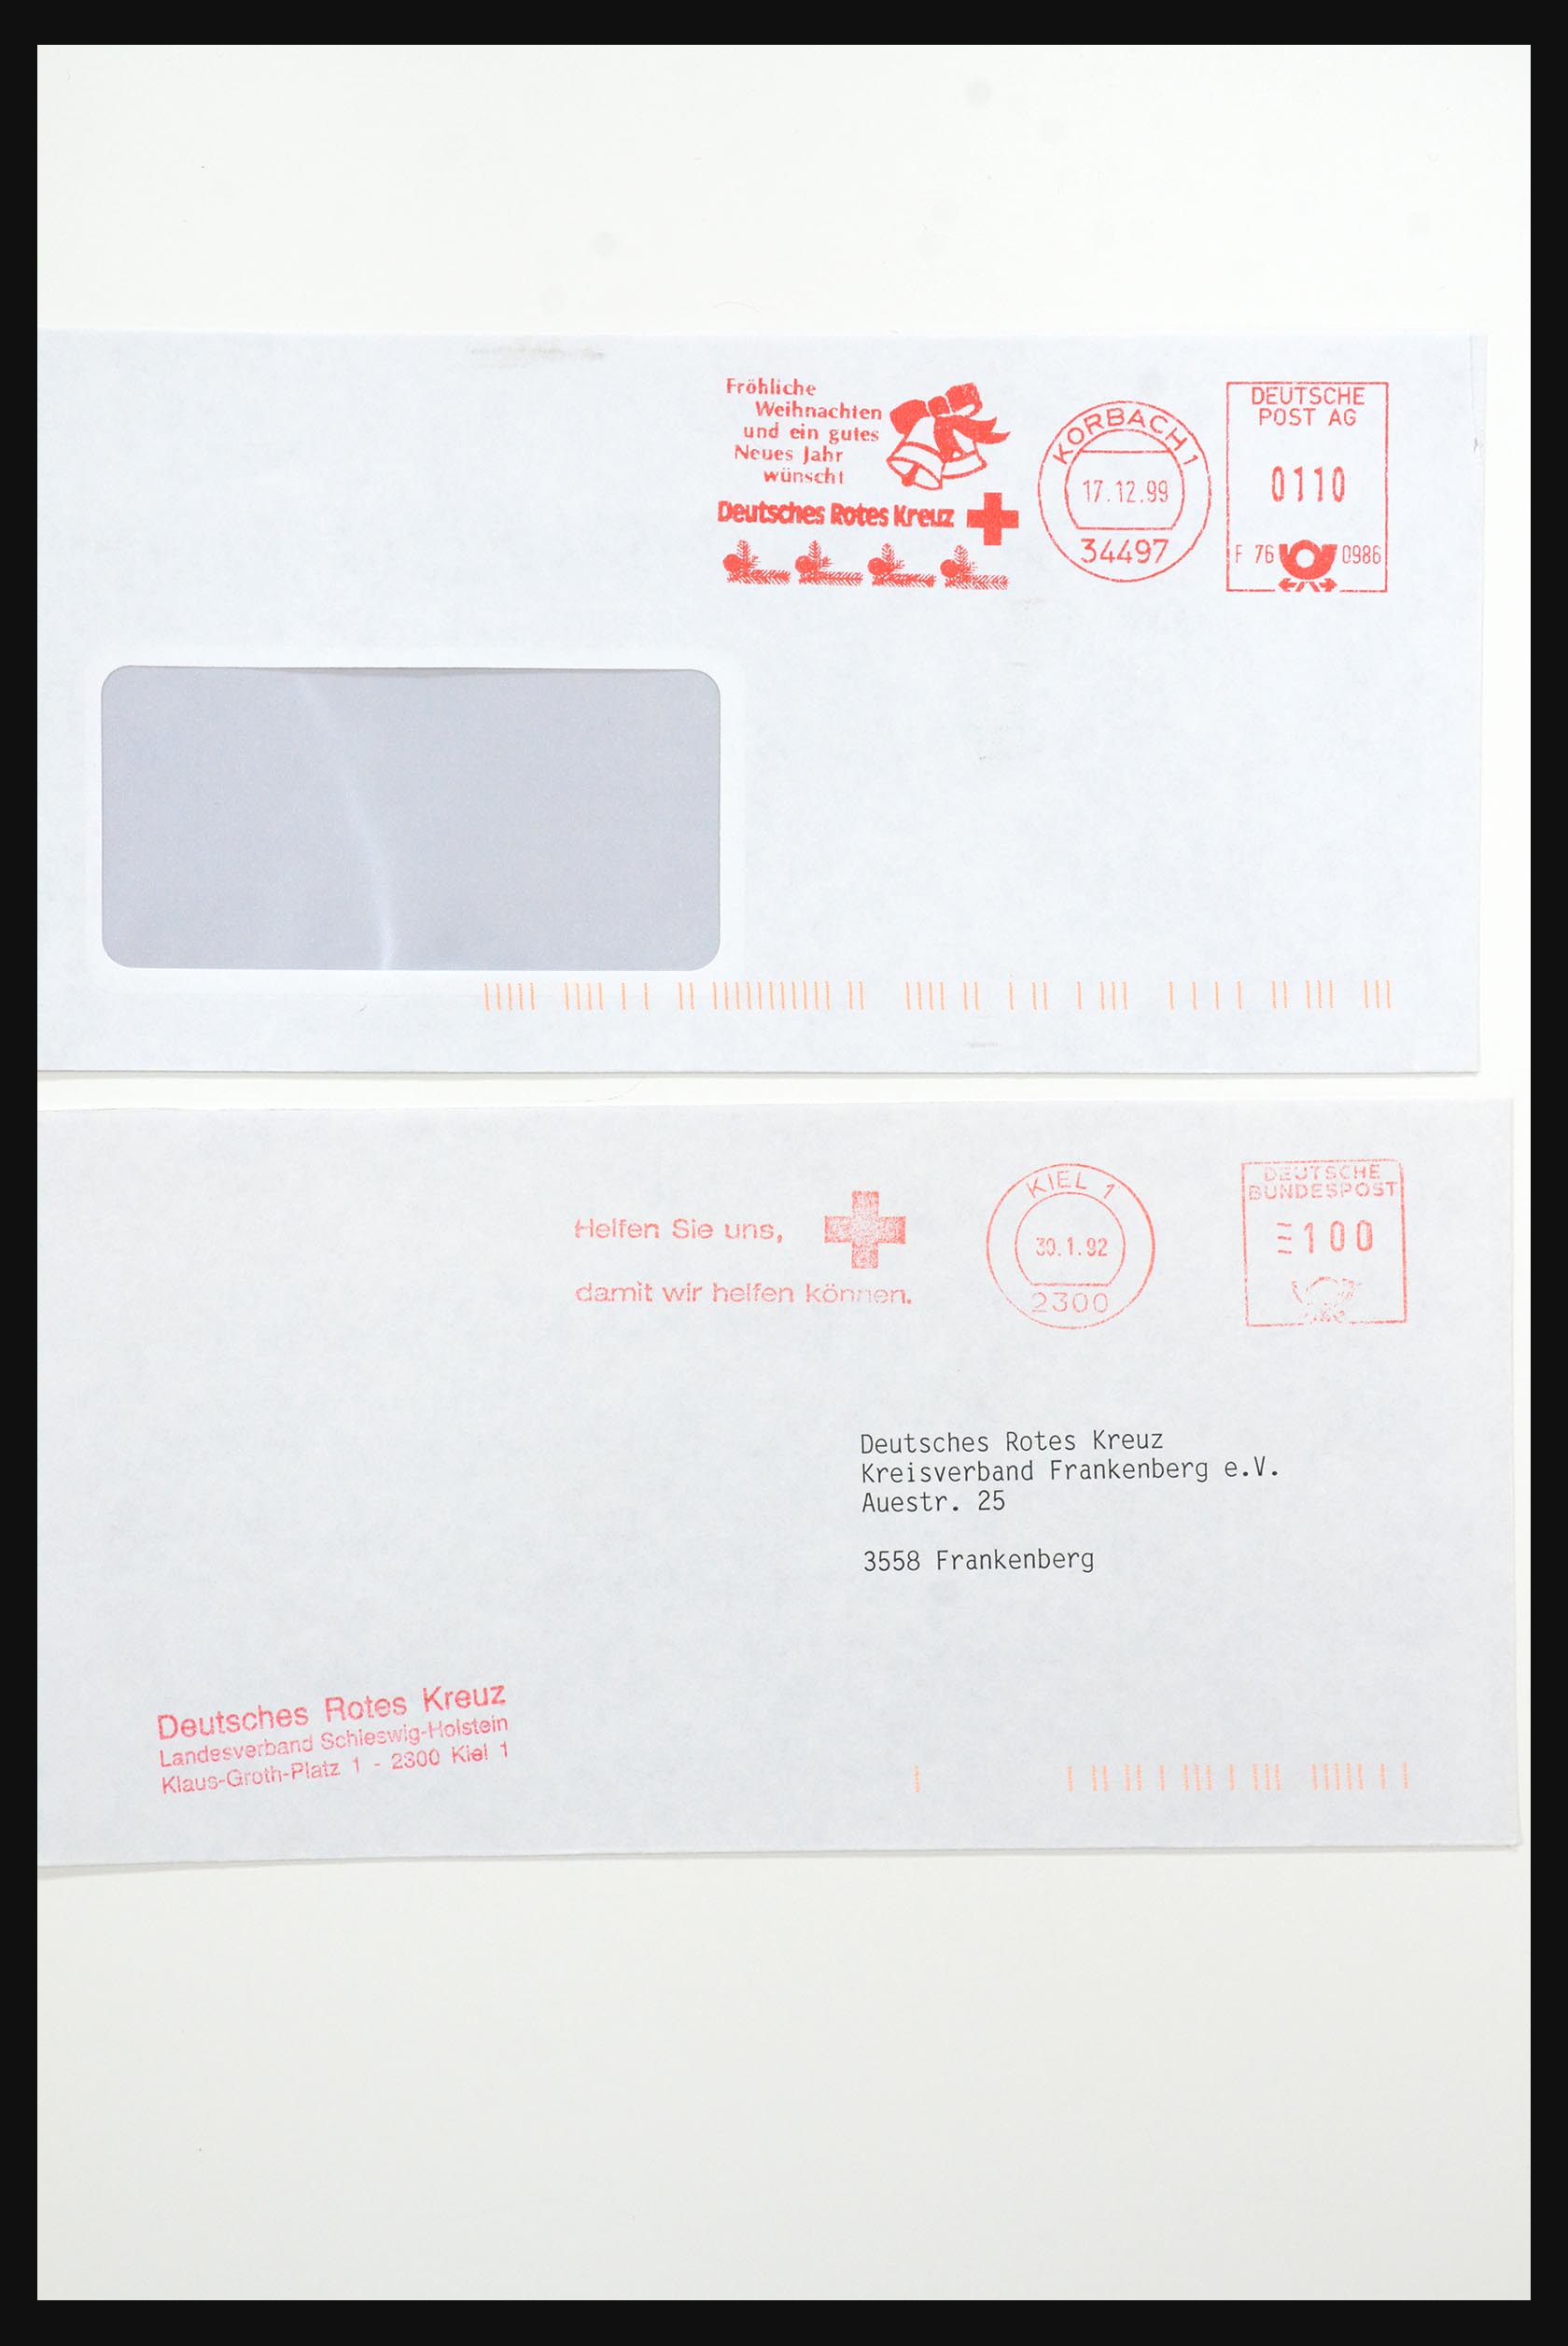 31365 1085 - 31365 Rode kruis brieven 1905-1975.